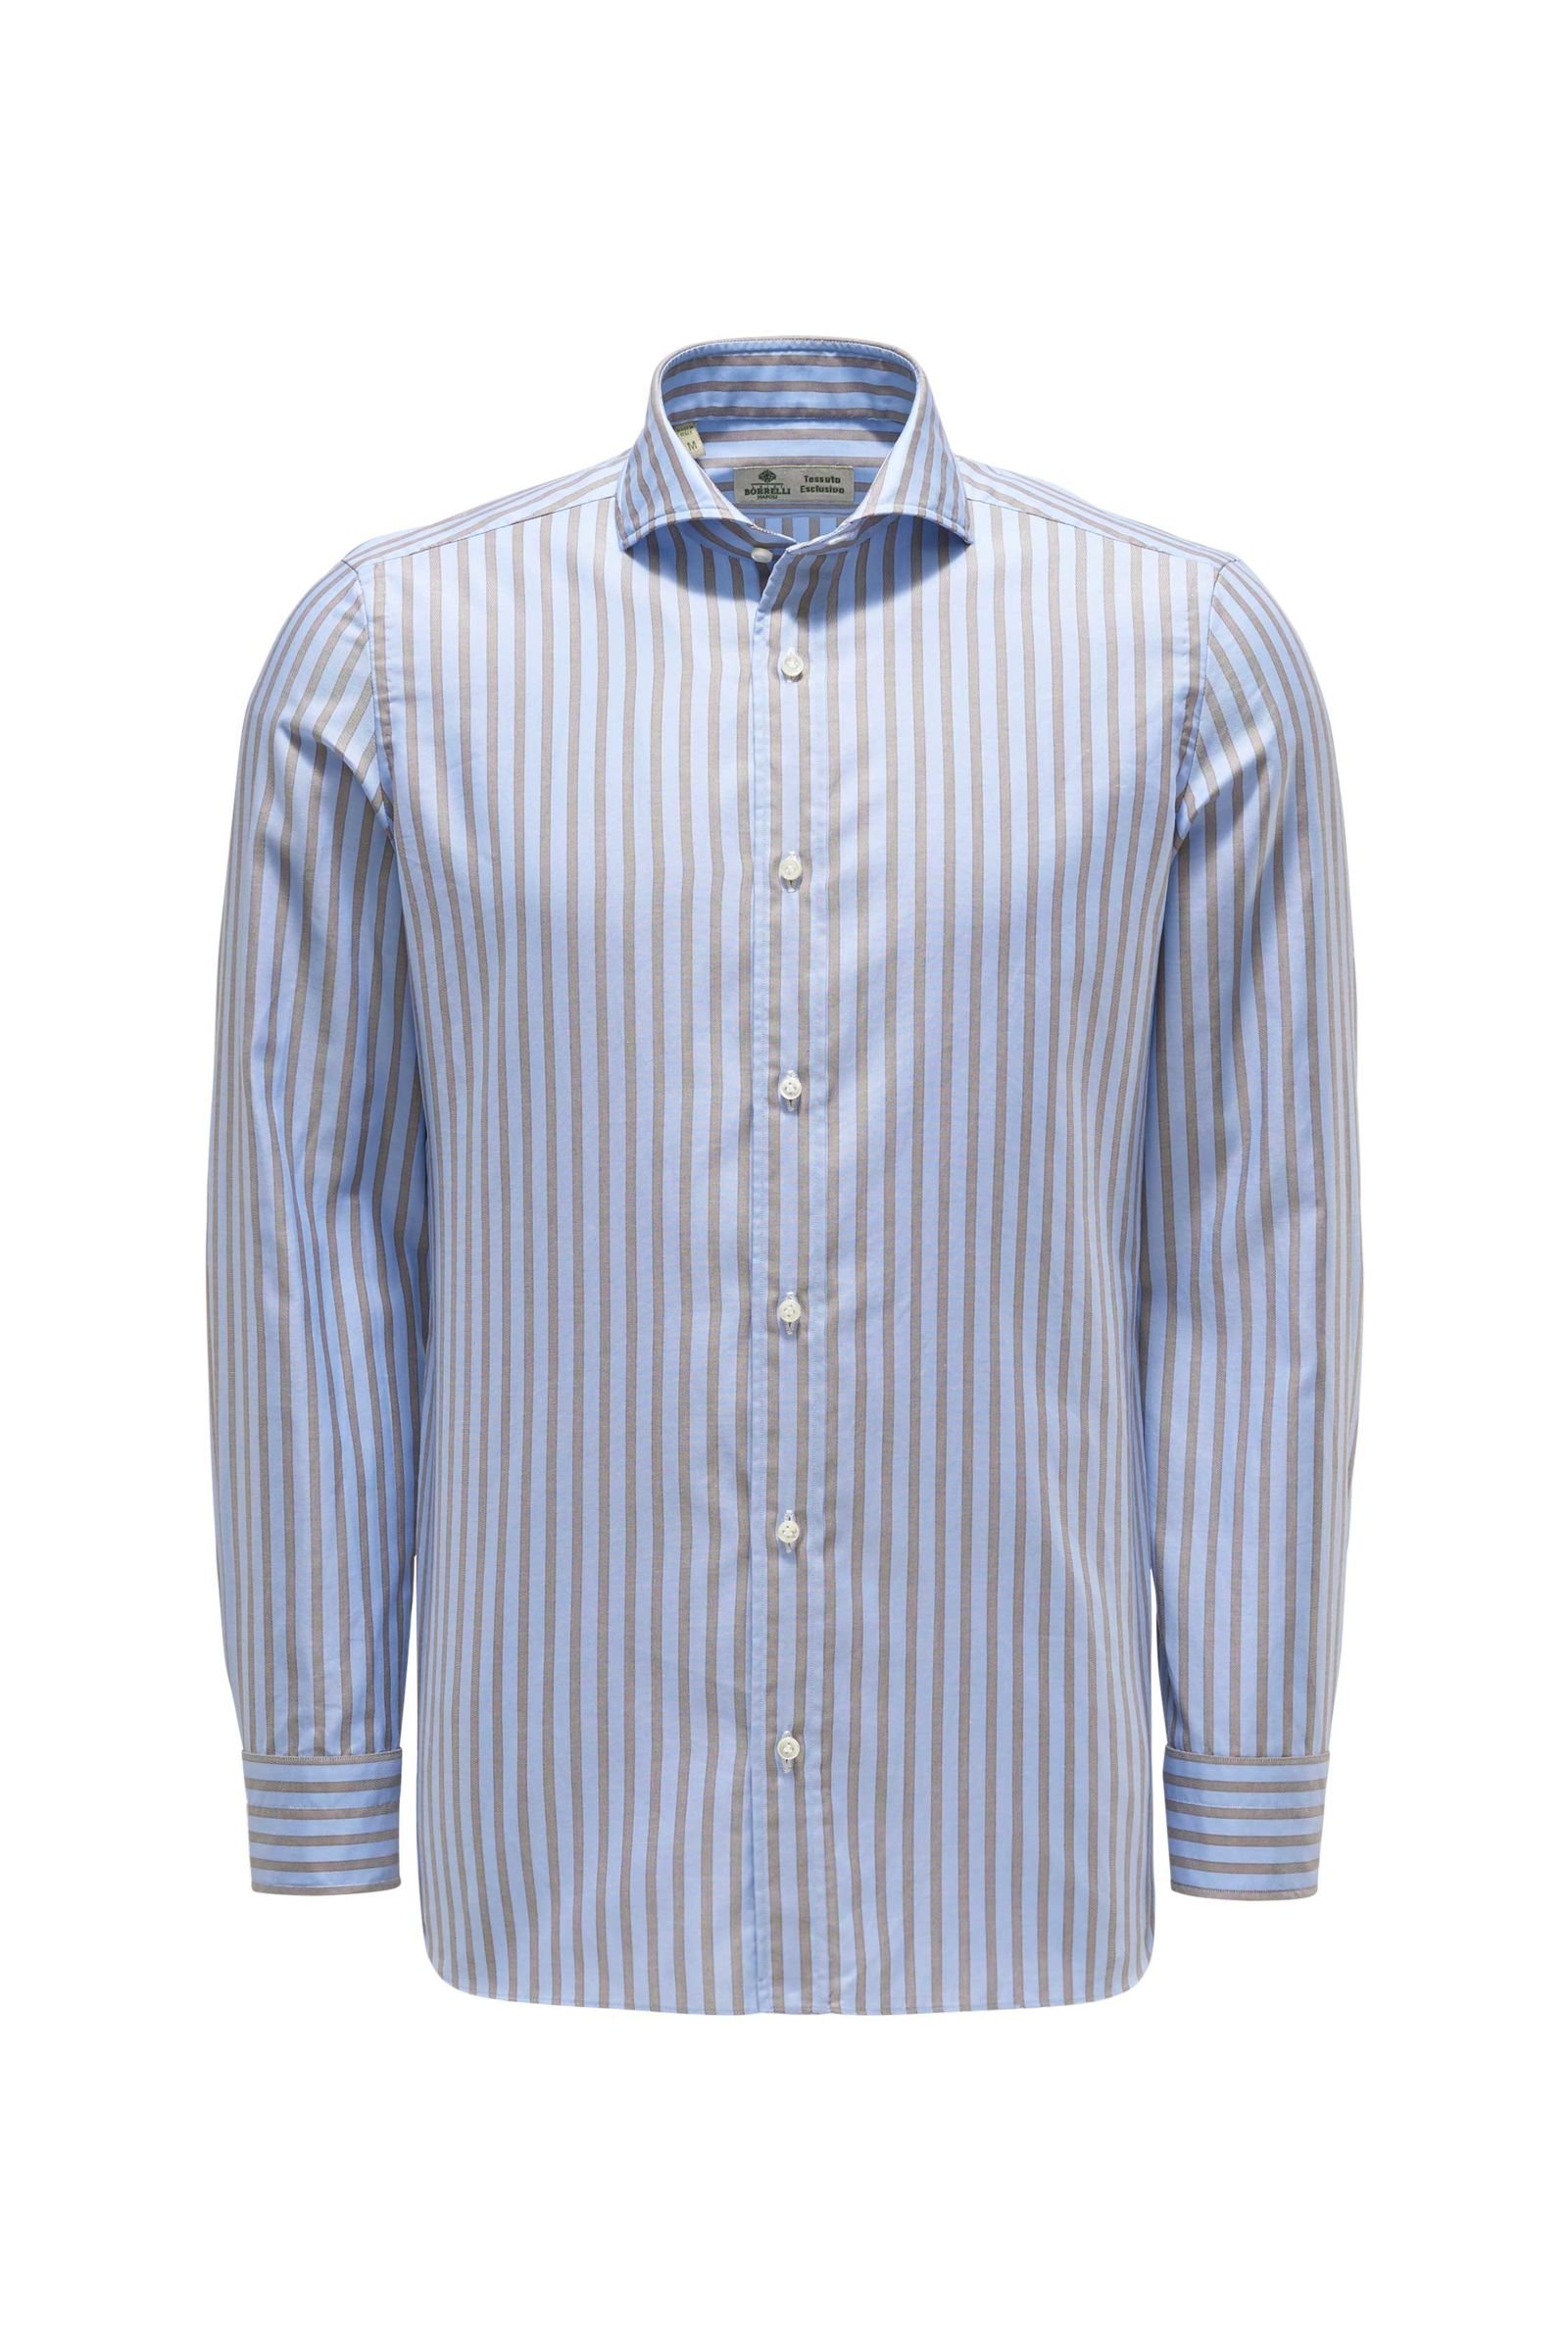 Oxford shirt shark collar light blue/brown striped